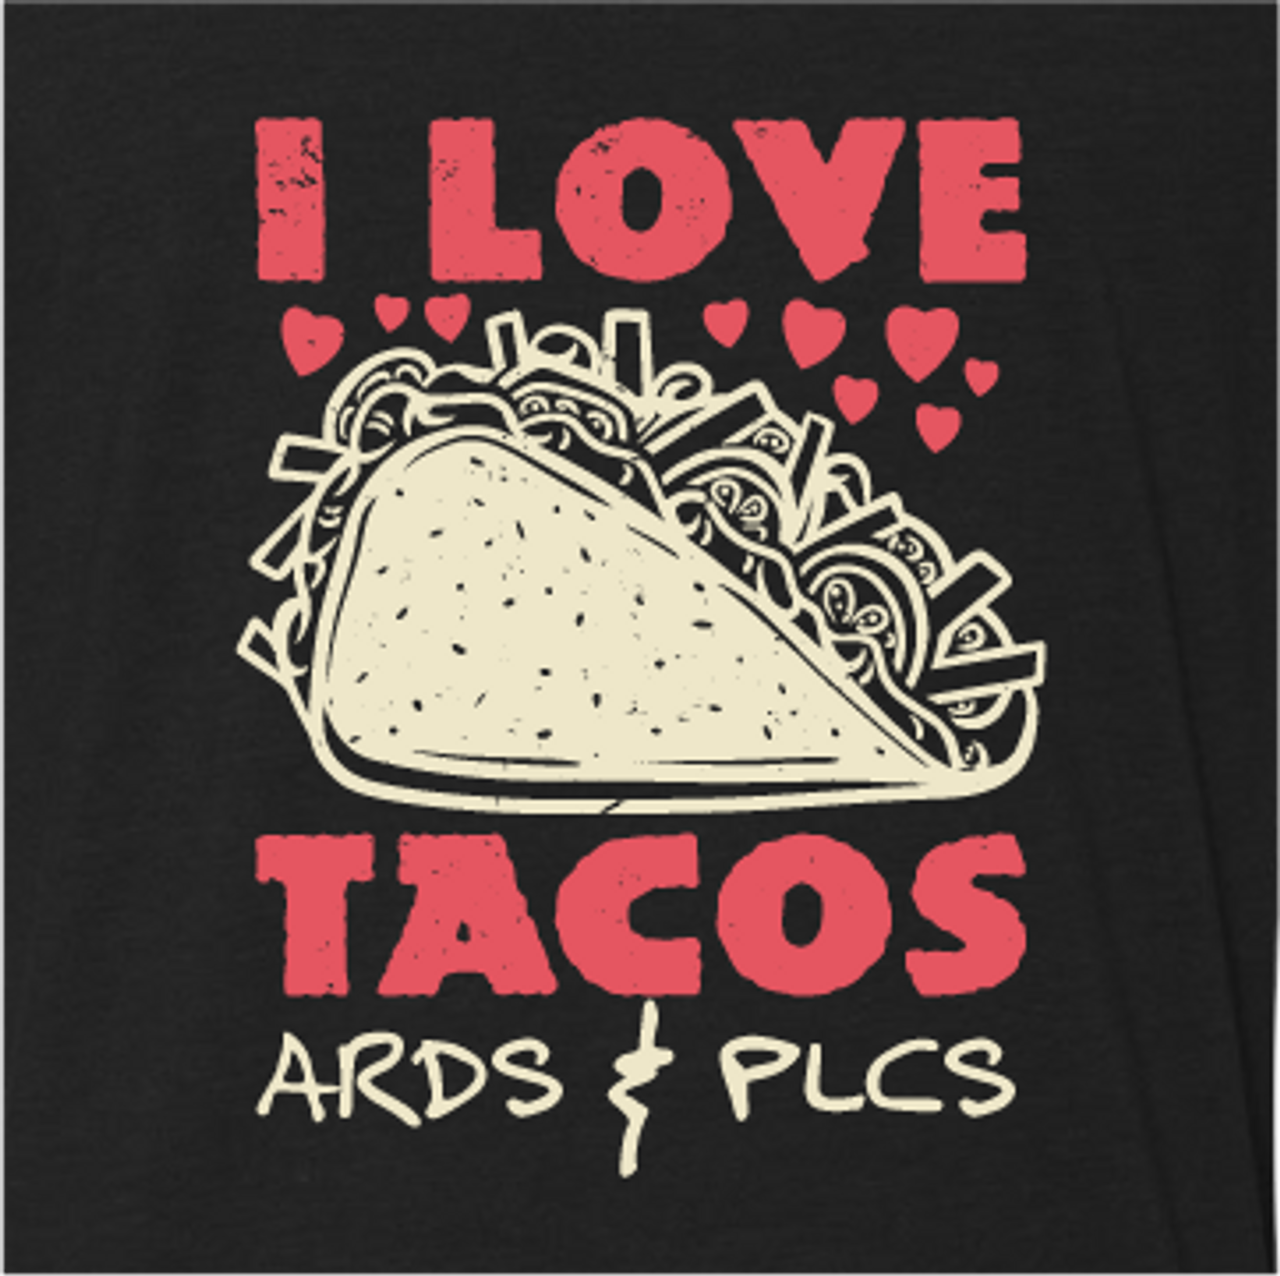 "I Love Tacos ARDs & PLCs"